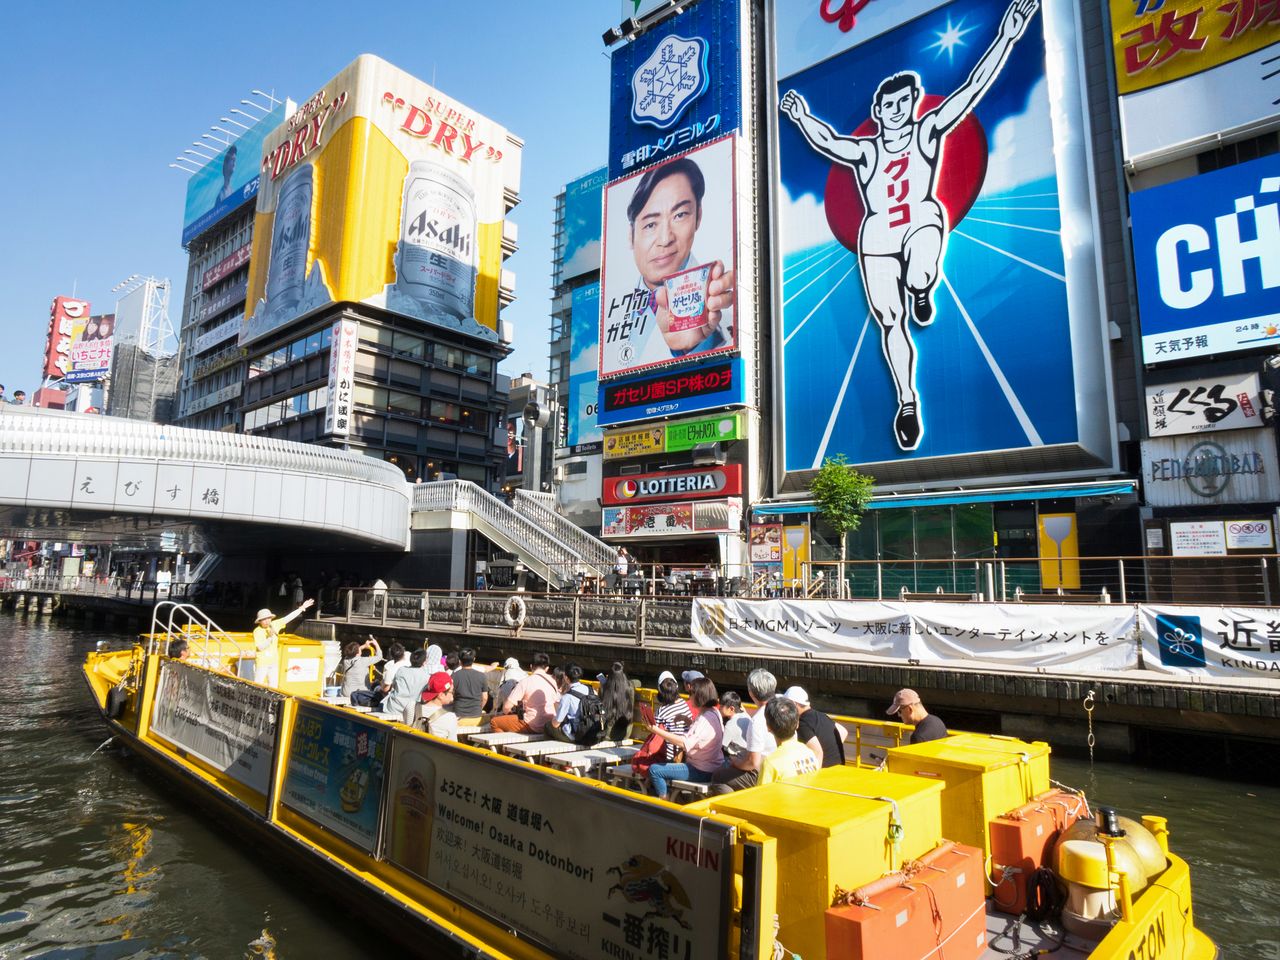 大阪ミナミを代表する風景は、やはりグリコの看板でおなじみの戎橋（えびすばし）周辺。道頓堀の景色を水上から楽しめる「とんぼりリバークルーズ」も人気